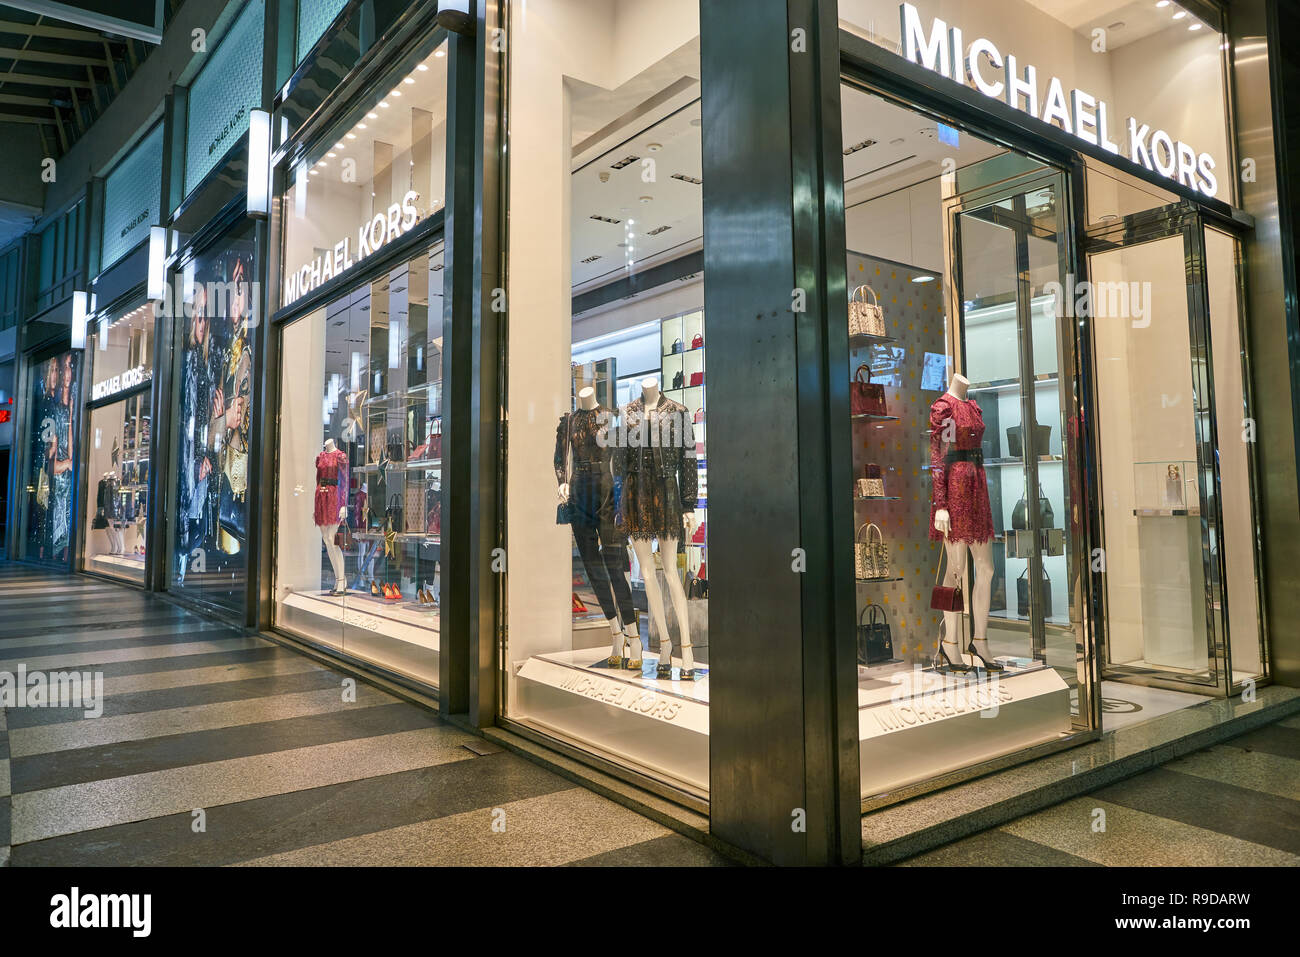 MILAN, ITALY - CIRCA NOVEMBER, 2017: Michael Kors store in Milan